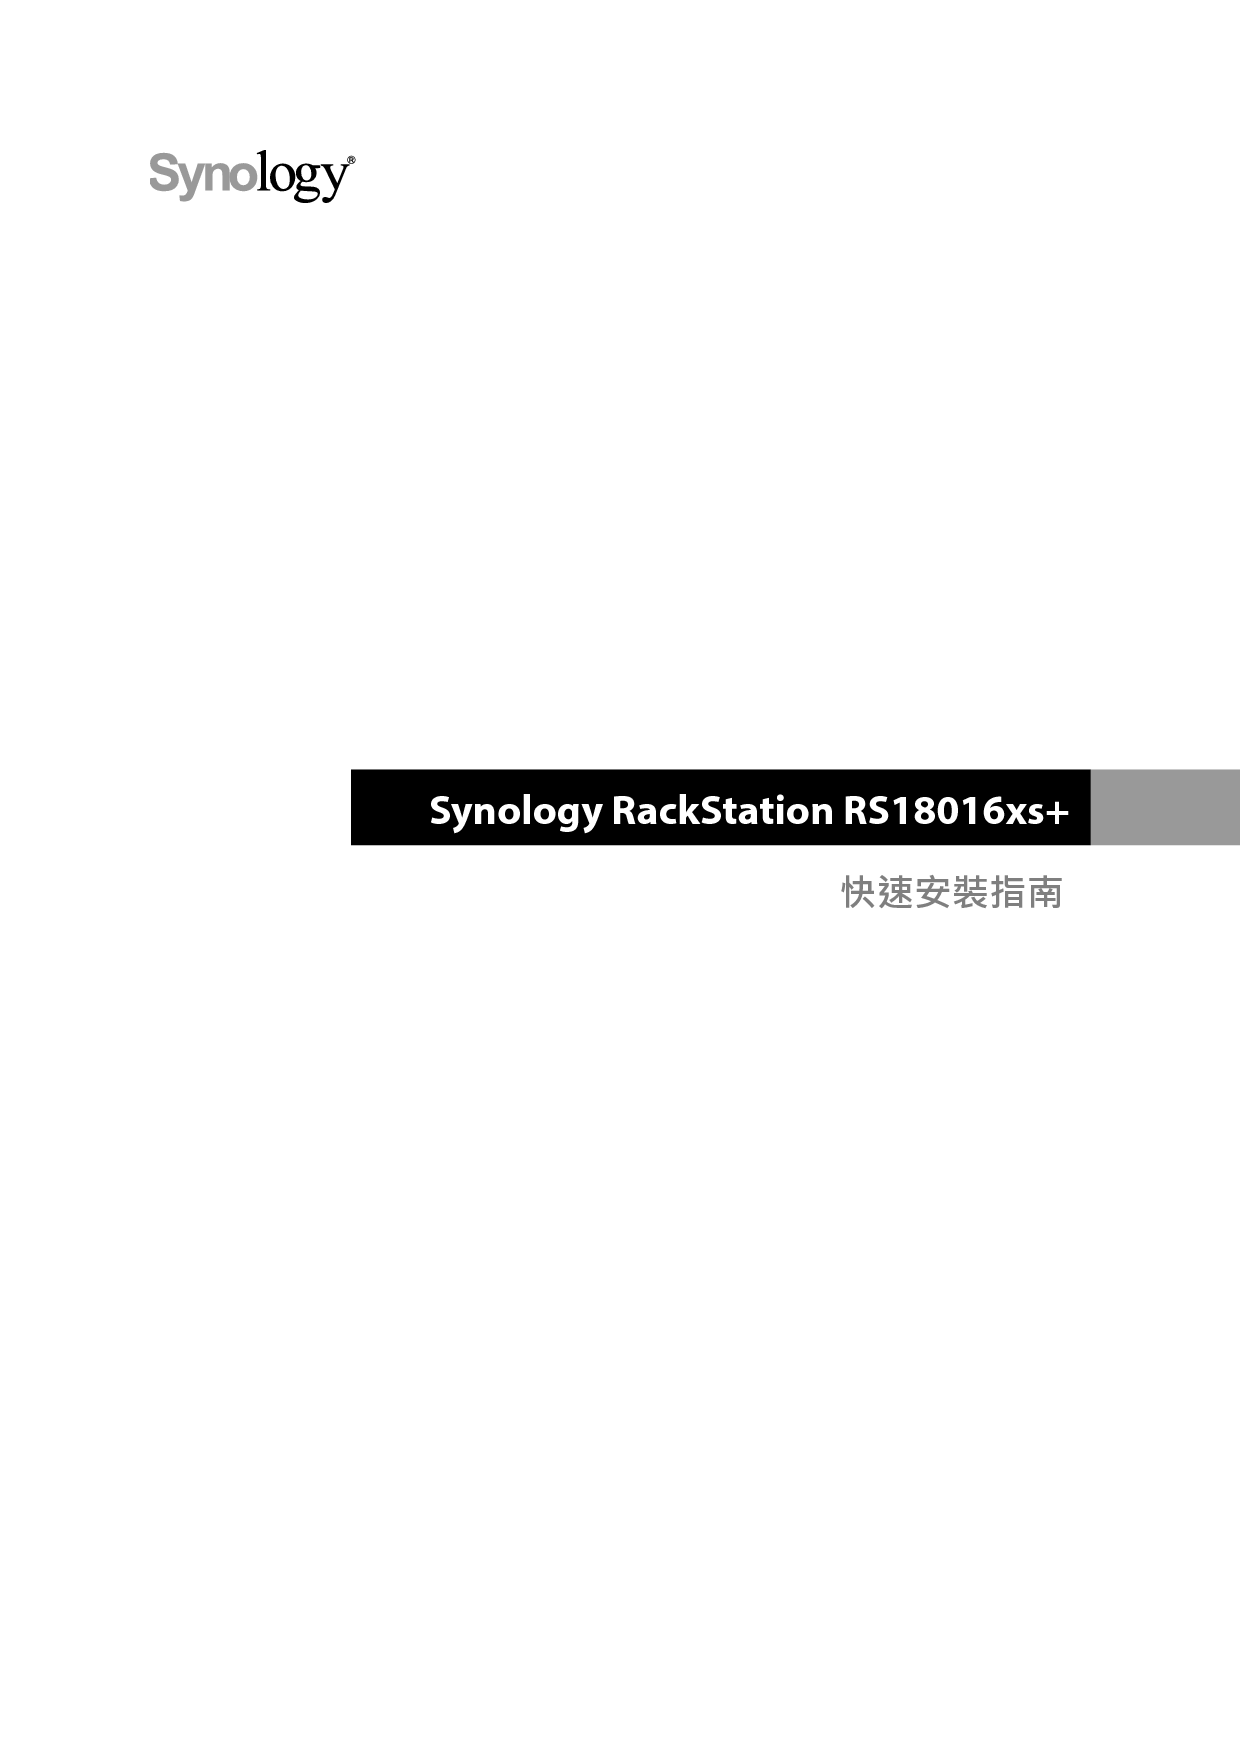 群晖 Synology RS18016XS+ 繁体 快速安装指南 封面